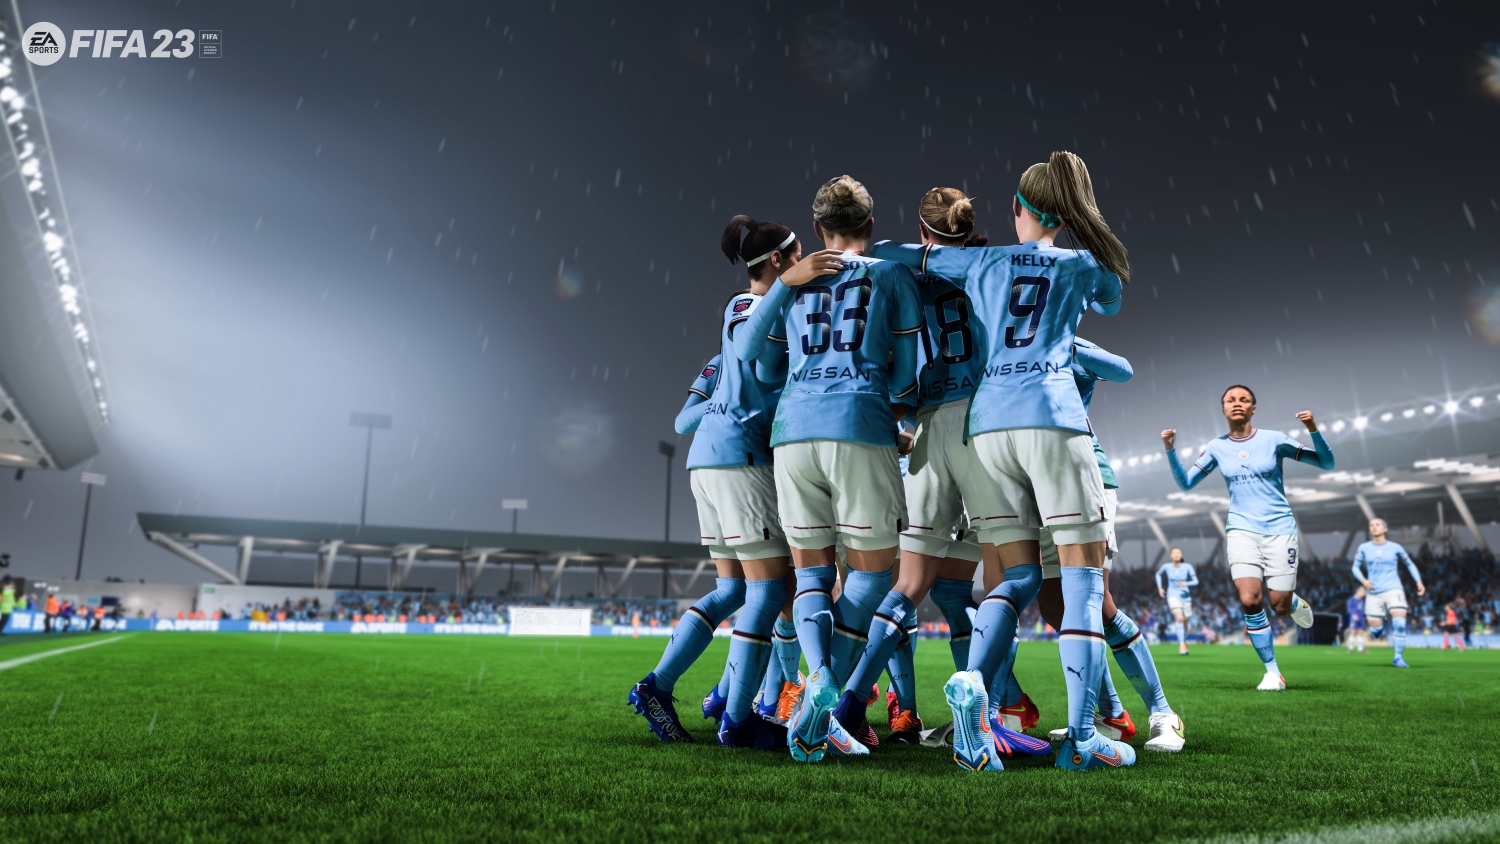 El equipo femenino del Manchester City celebrando un gol en FIFA 23.